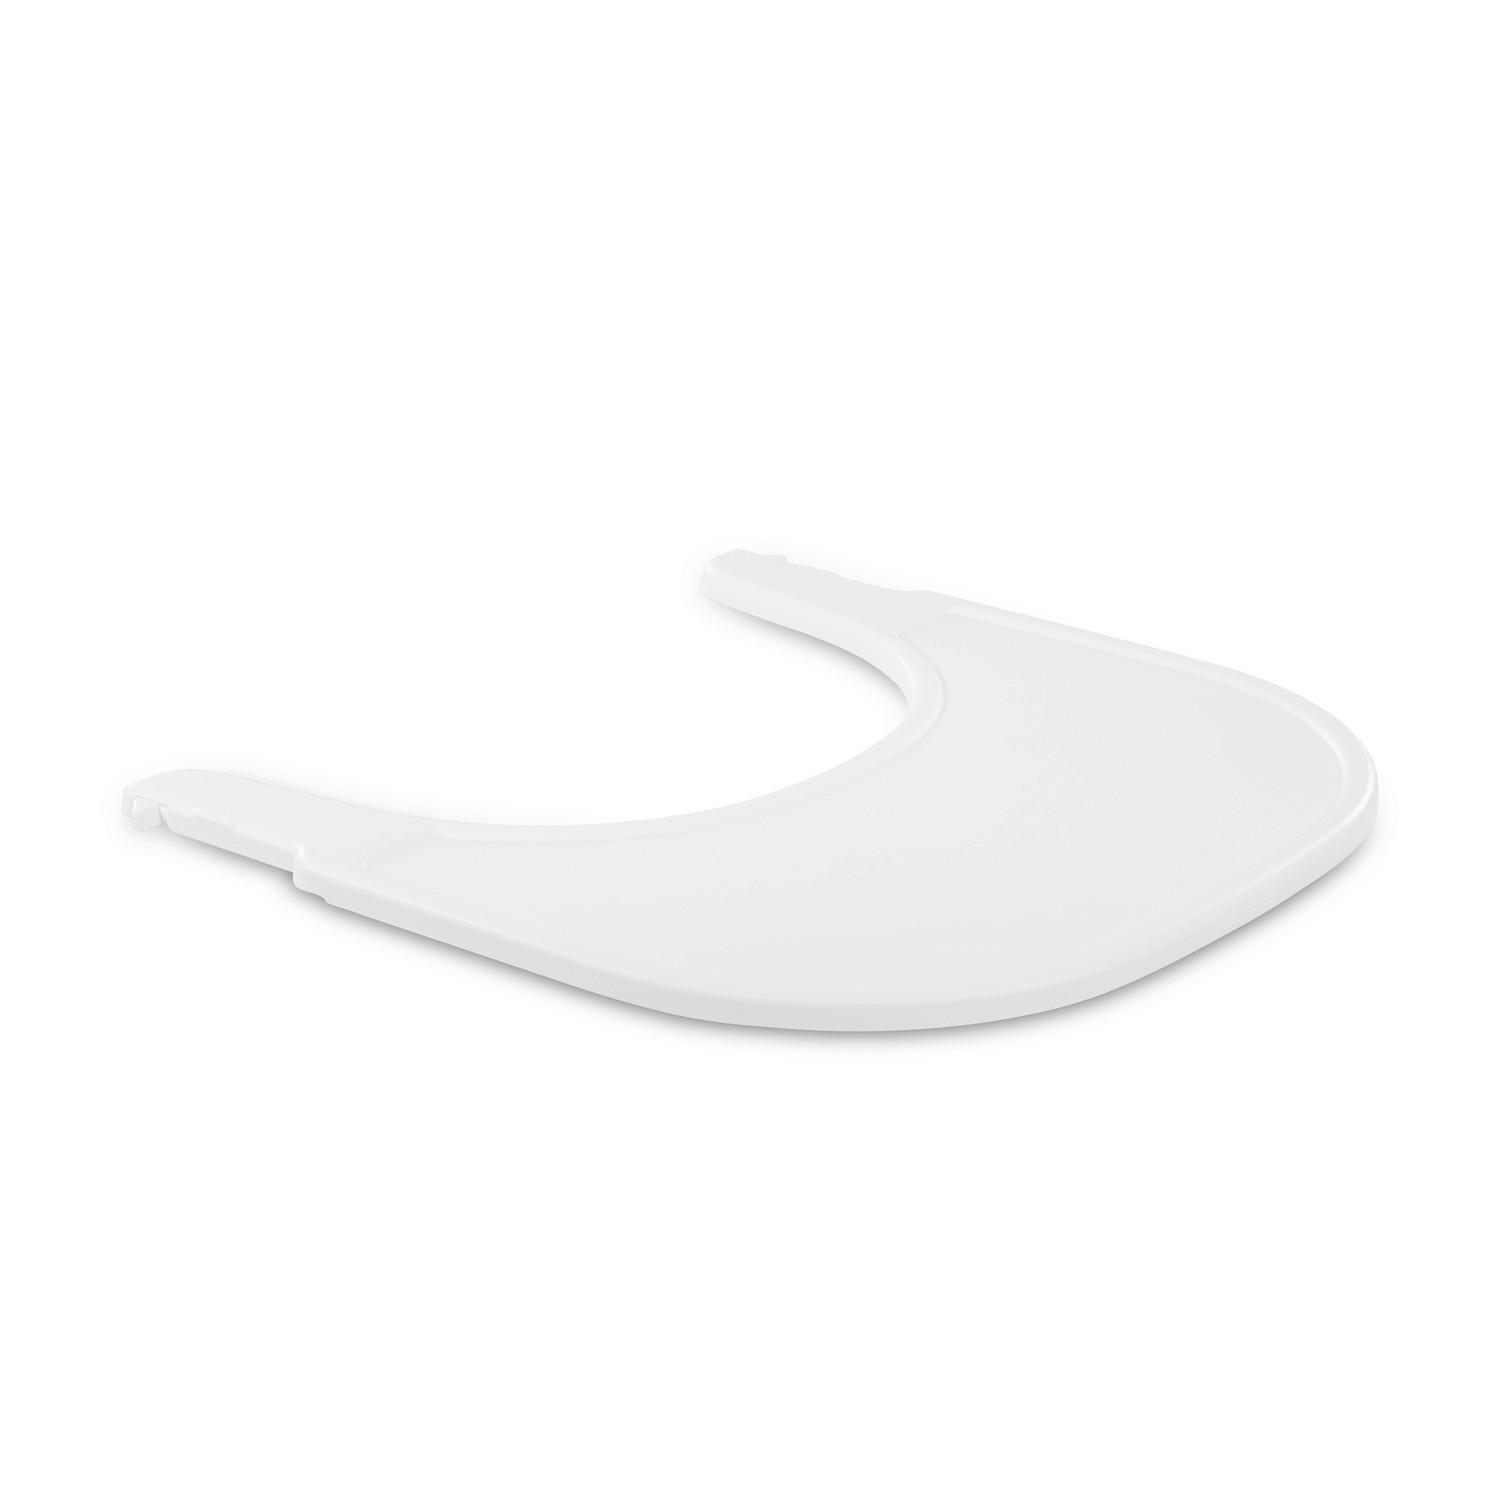 ESS- UND SPIELBRETT   WHITE   ALPHA CLICK TRAY  - Weiß, Basics, Kunststoff (46/44/3,5cm) - Hauck